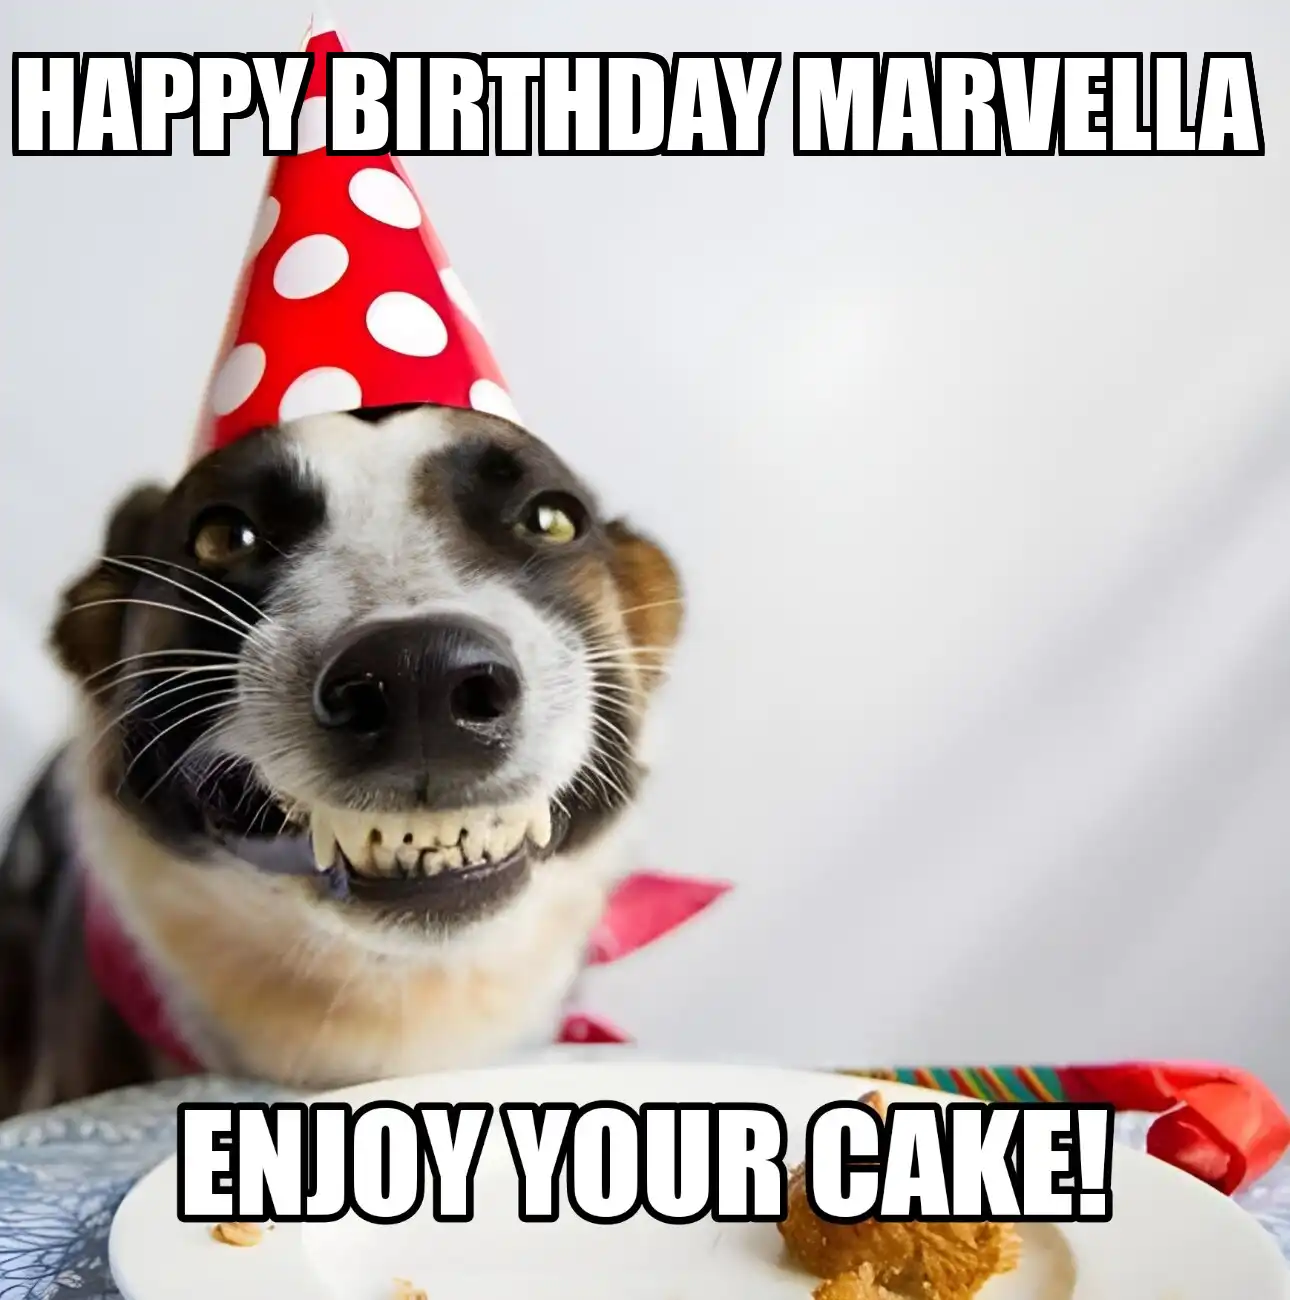 Happy Birthday Marvella Enjoy Your Cake Dog Meme